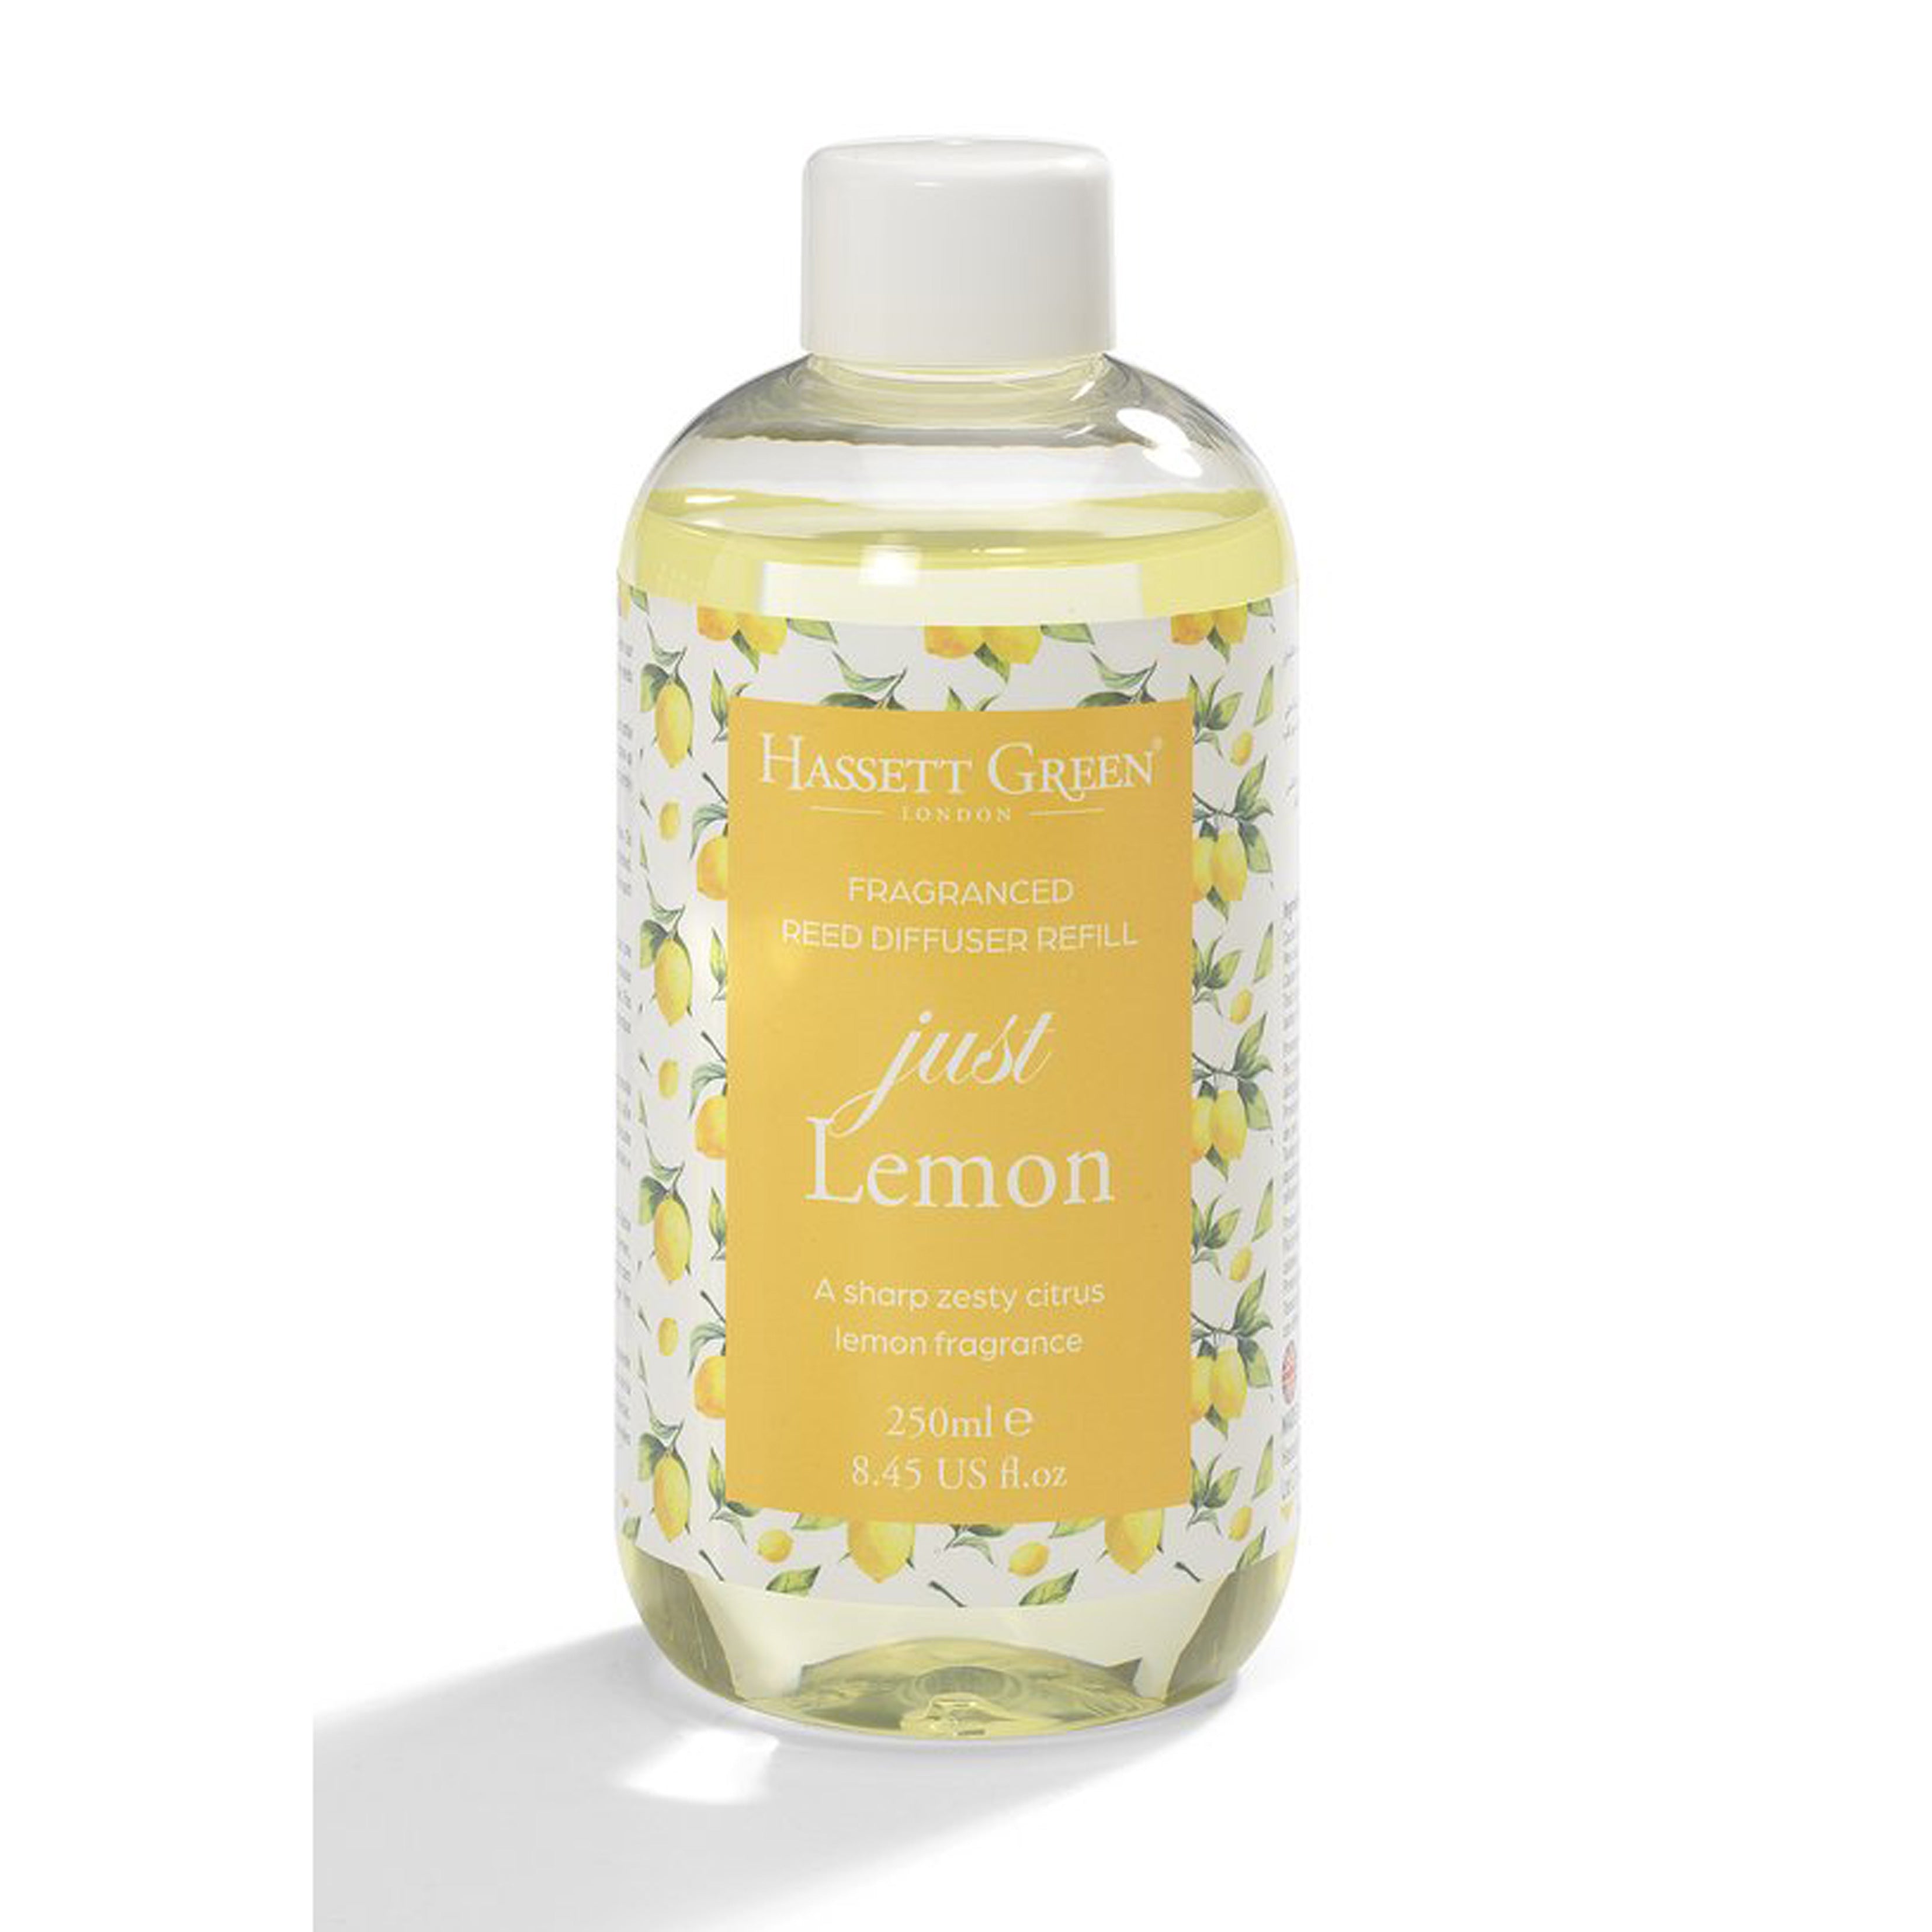 Just Lemon - Fragrance Oil Diffuser Refill 250Ml